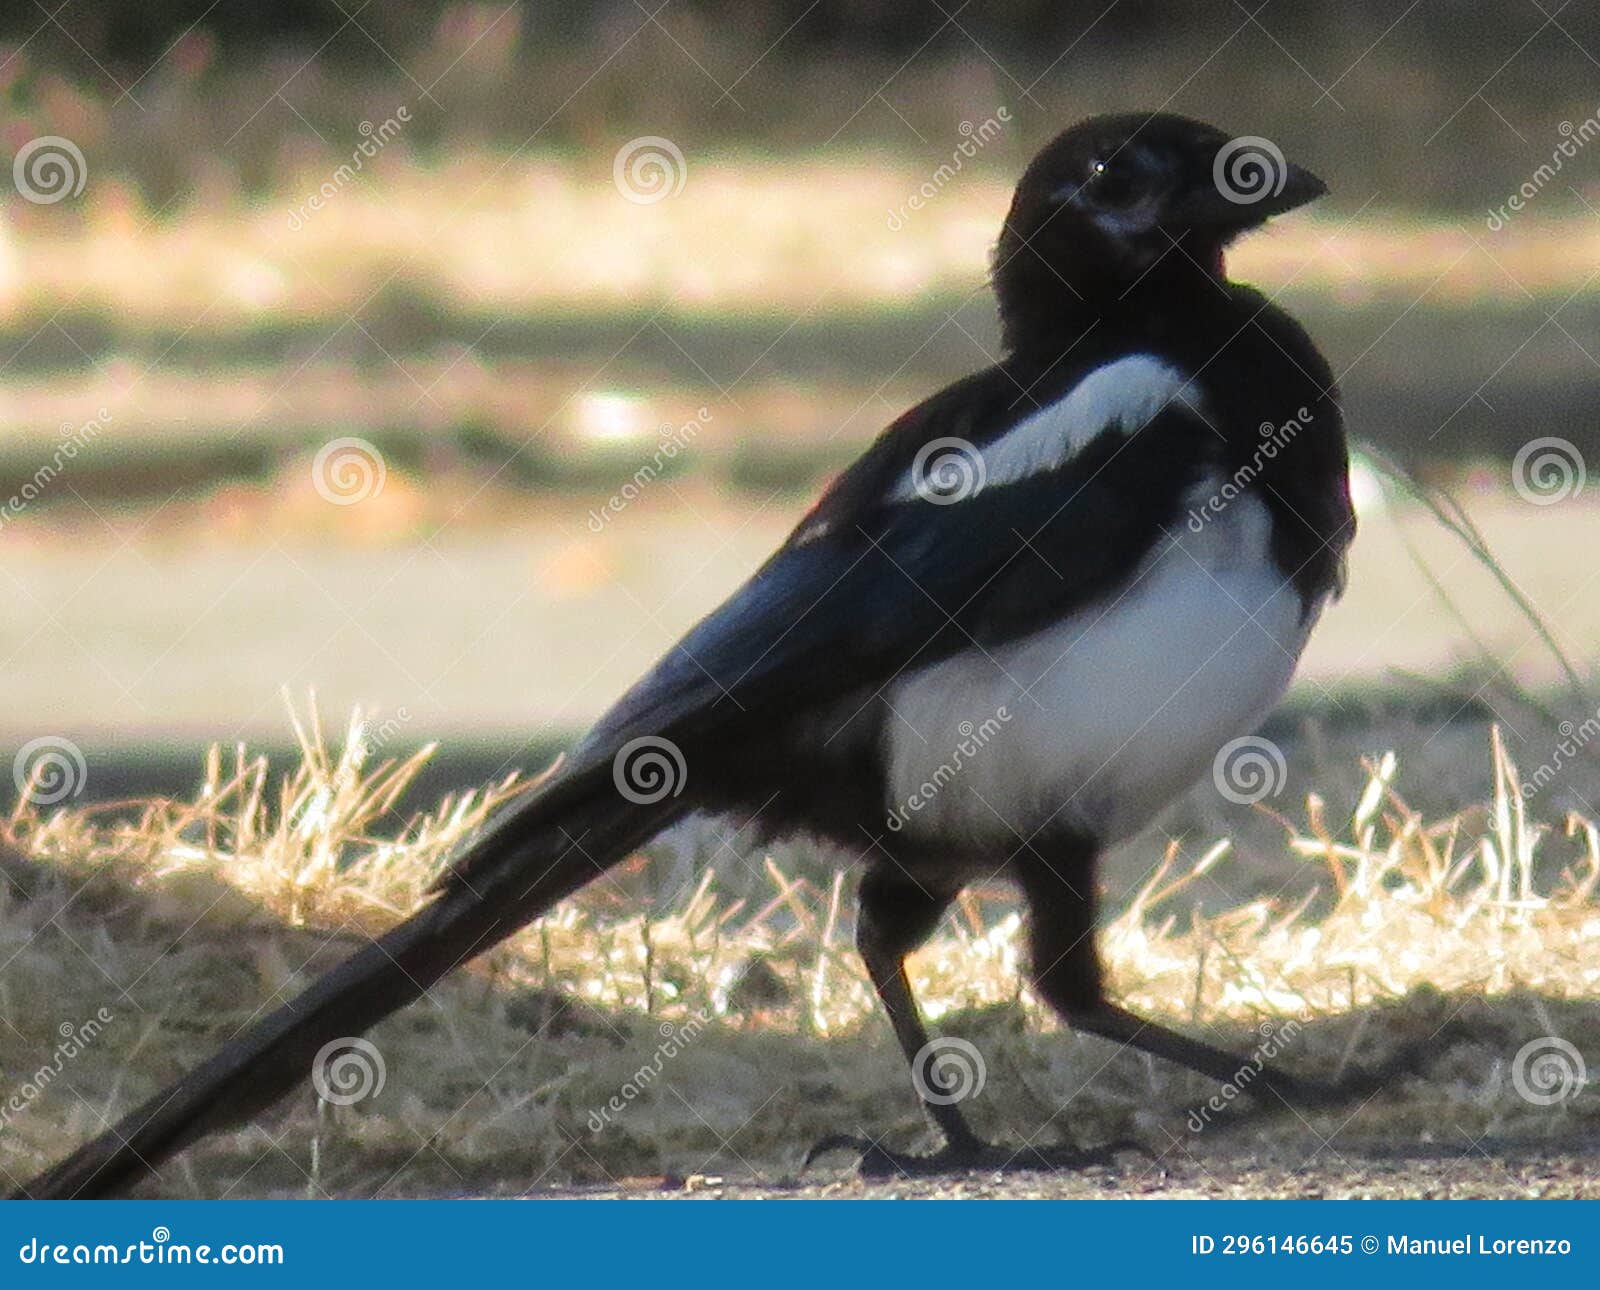 white and black magpie wild distrustful elusive bird